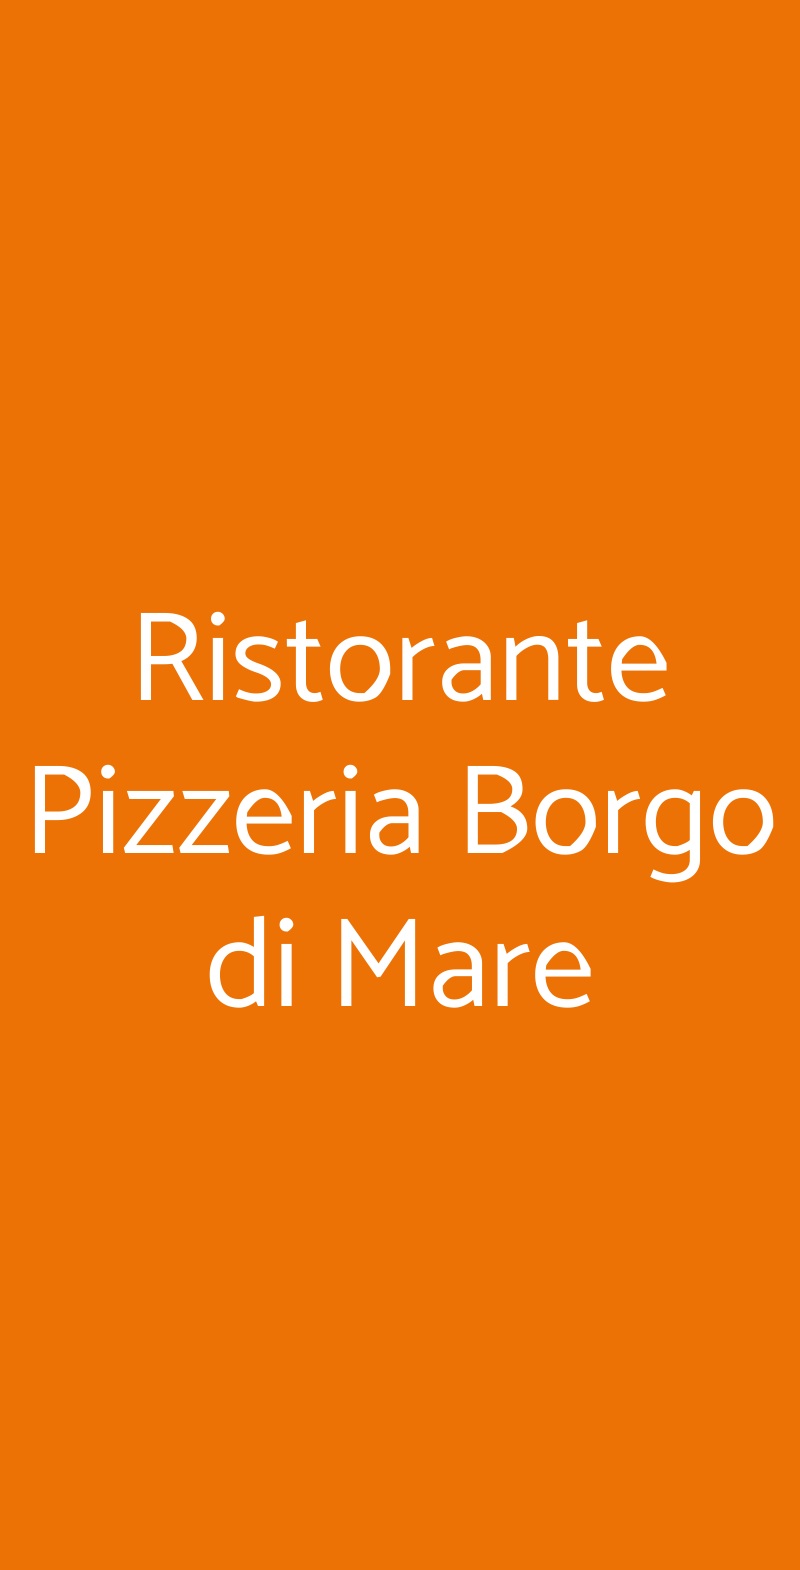 Ristorante Pizzeria Borgo di Mare San Donato Milanese menù 1 pagina